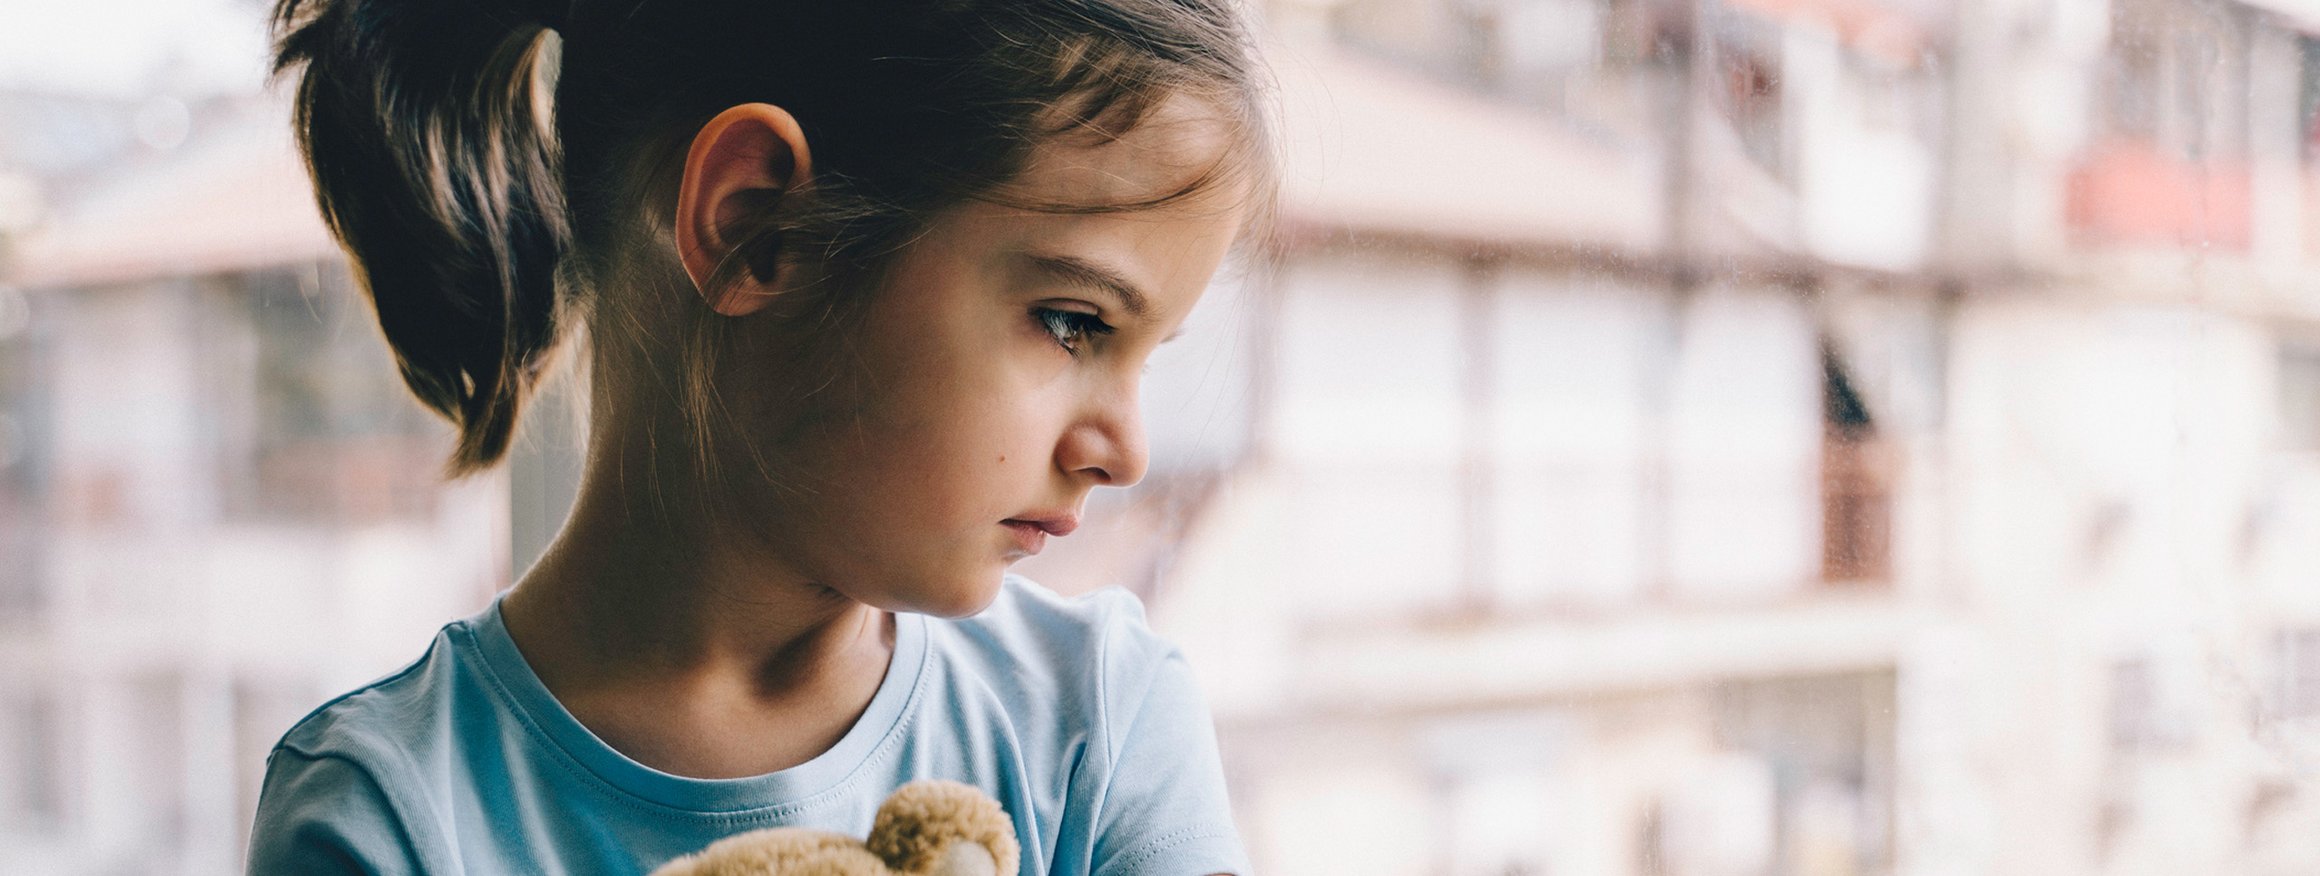 Ein kleines Mädchen hält ihren Teddy im Arm und schaut traurig aus dem Fenster